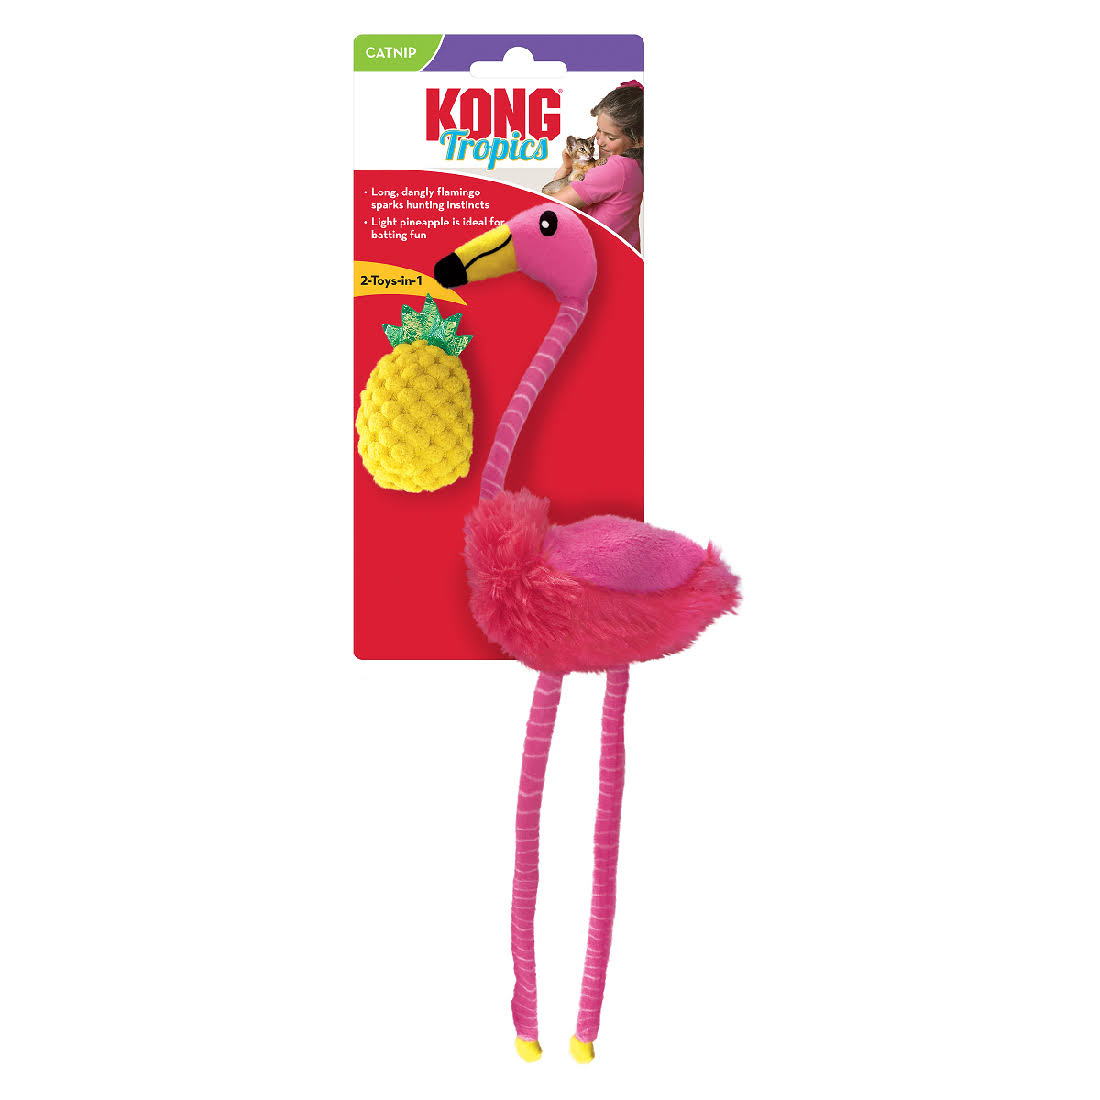 Kong Tropics Flamingo Cat Toy